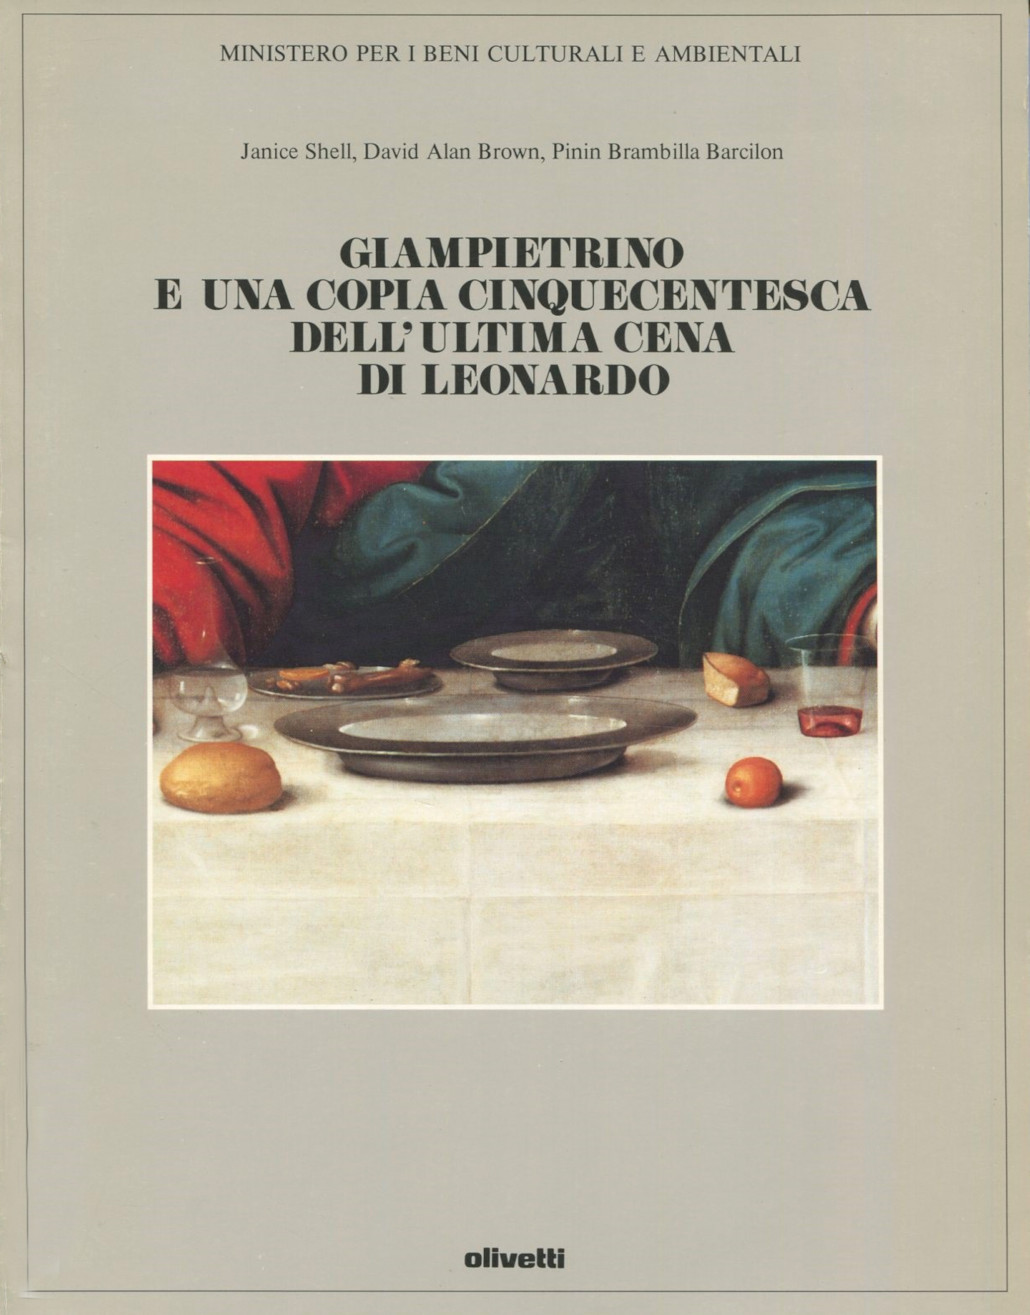 Gianpietrino e una copia cinquecentesca dell’ultima cena di Leonardo